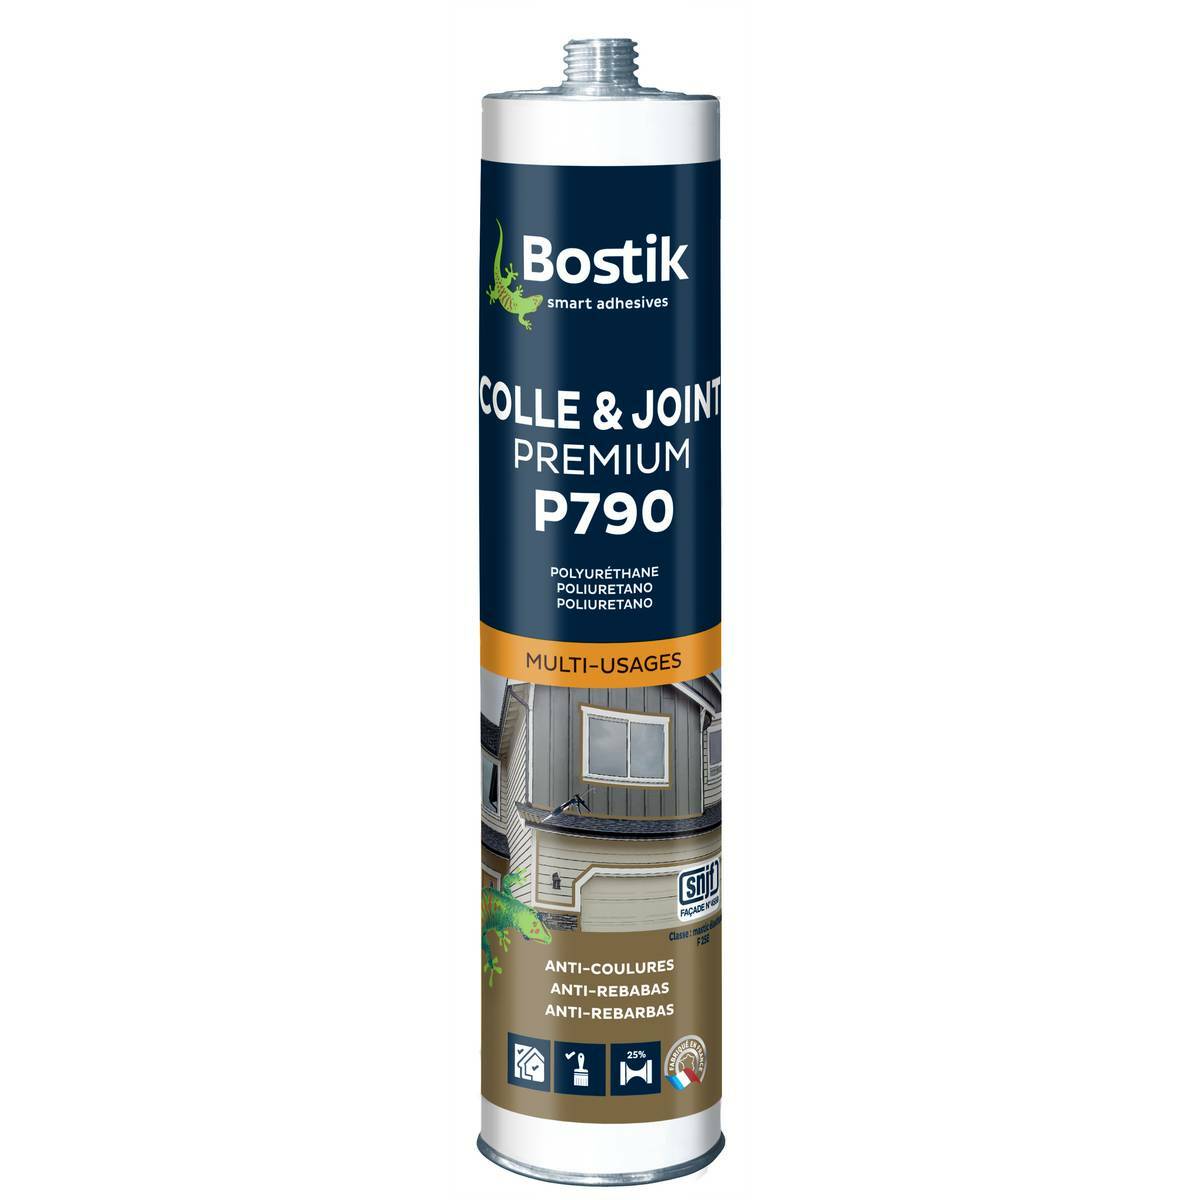 Mastic multi-usages Bostik P790 Colle et Joint Premium